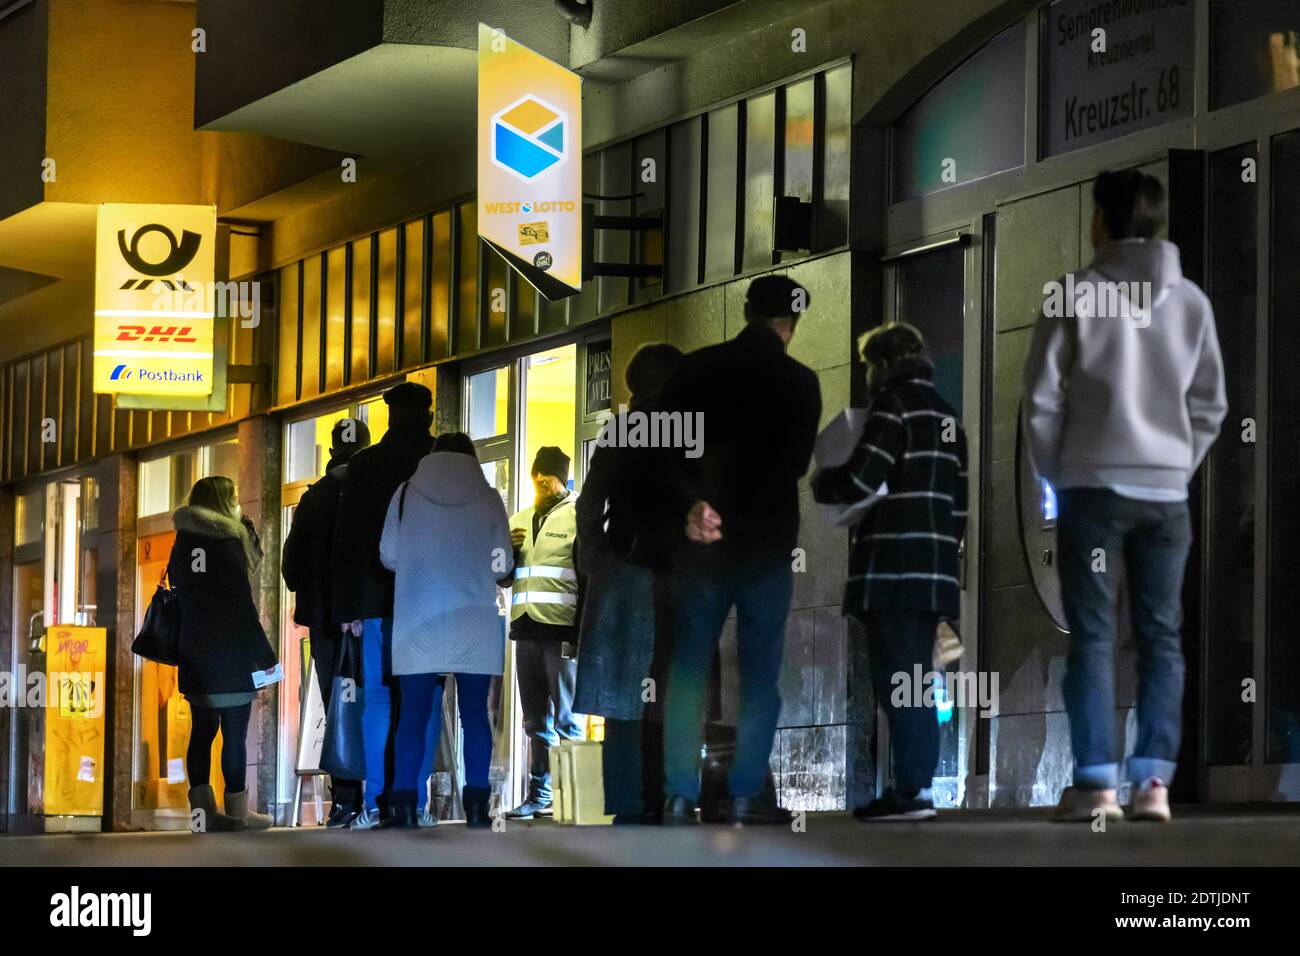 Dortmund, 18. Dezember 2020: Kunden warten auf dem Bürgersteig vor einer Filiale der Deutschen Post / DHL in Dortmund. Aufgrund der Einschränkungen der zweiten Sperrung der Corona-Pandemie dürfen nur 3 Kunden gleichzeitig in dieser Filiale bleiben. Stockfoto